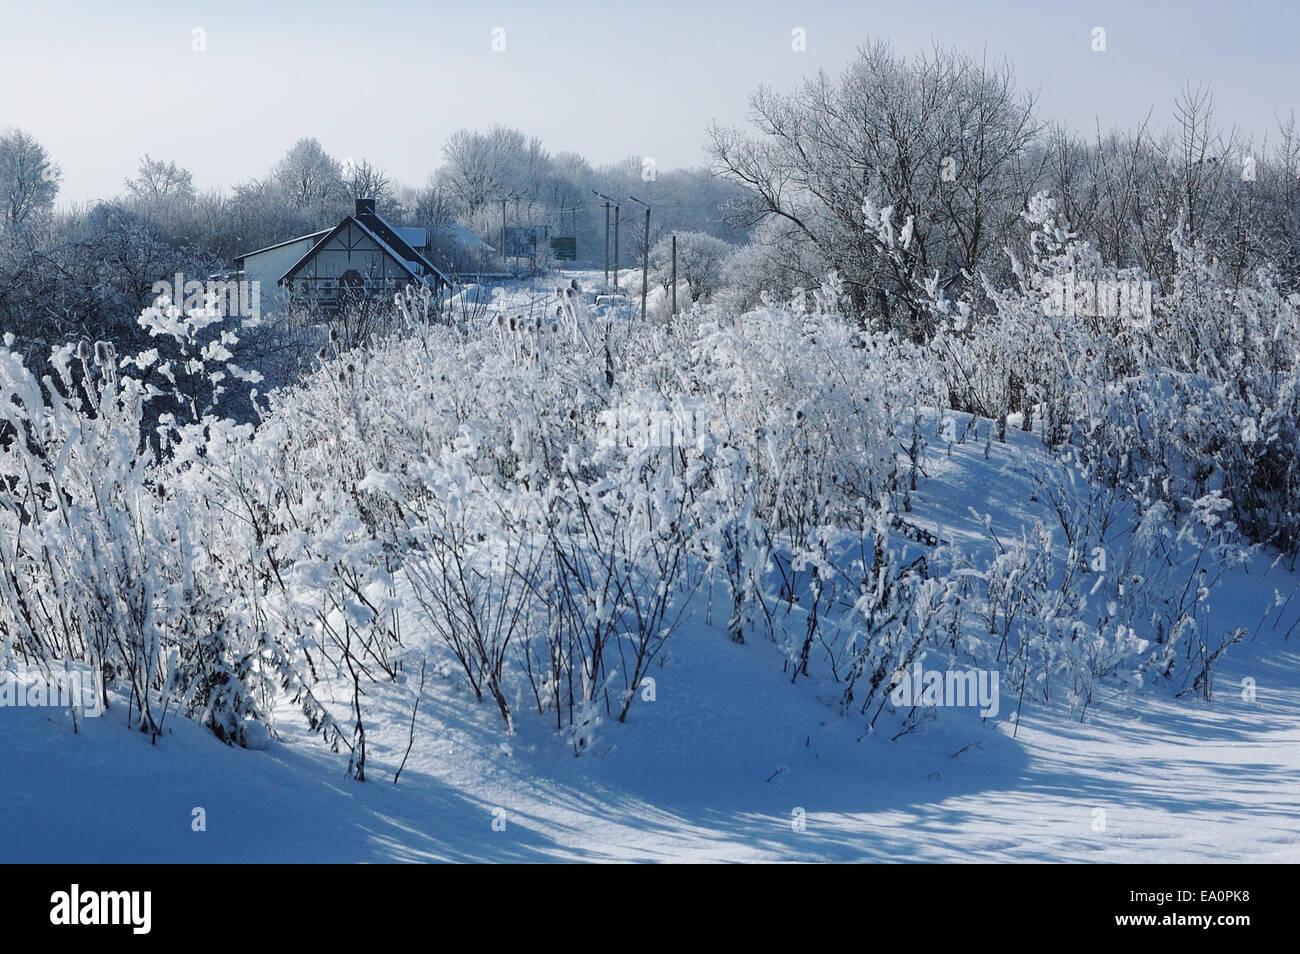 Invierno tranquilo paisaje helado con bellos árboles de esmerilado en frío día soleado Foto de stock